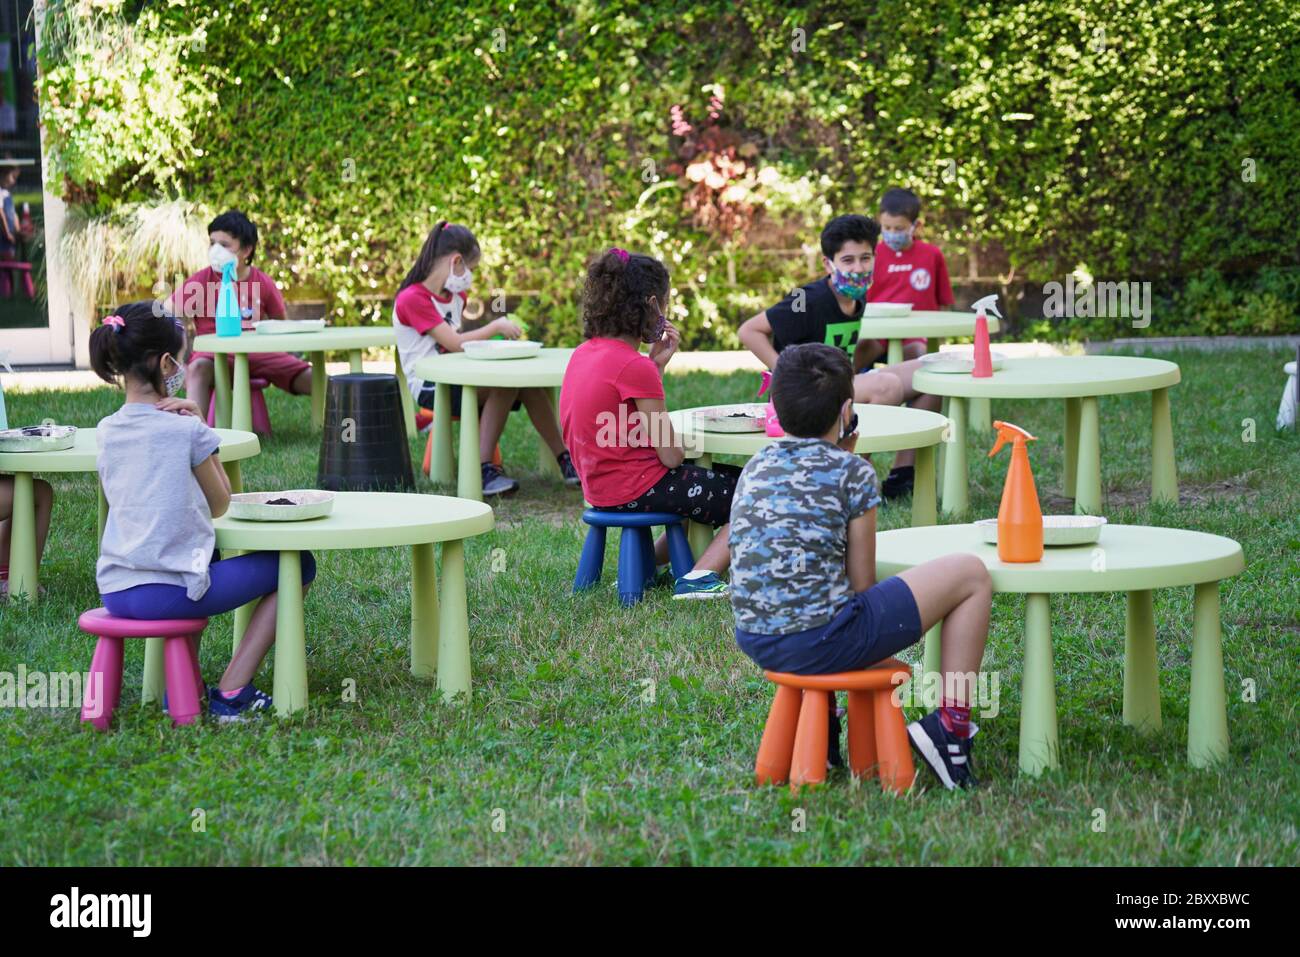 Stile di vita dell'epidemia di coronavirus: Attività scolastiche estive all'aperto con misure di distanza sociale. Torino - Giugno 2020 Foto Stock